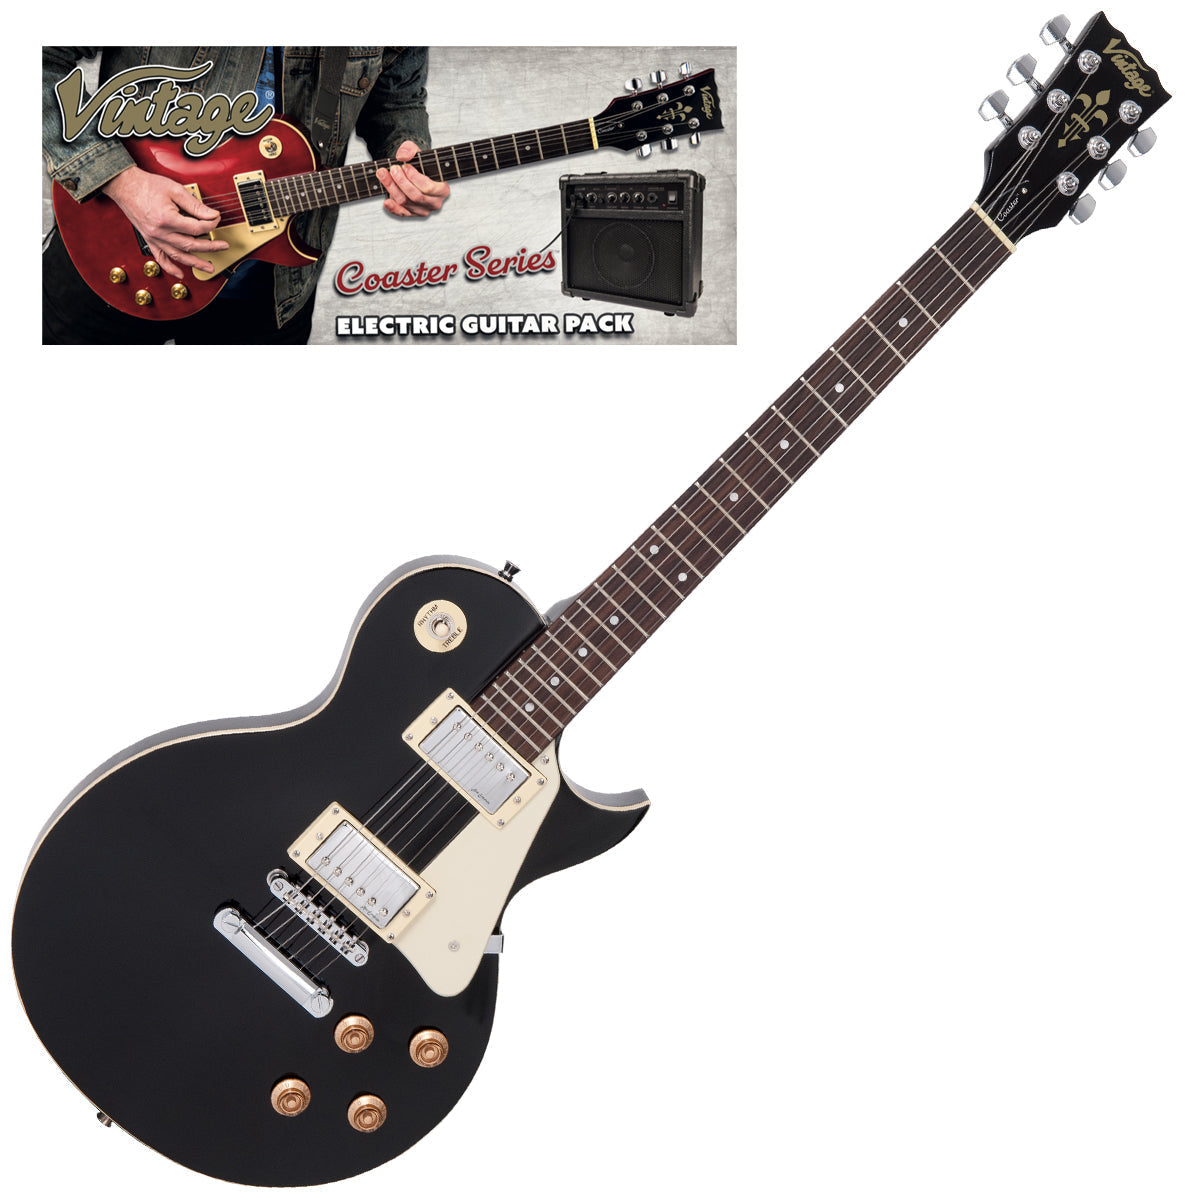 Vintage V10 Coaster Series Electric Guitar Pack ~ Boulevard Black, Electric Guitar for sale at Richards Guitars.